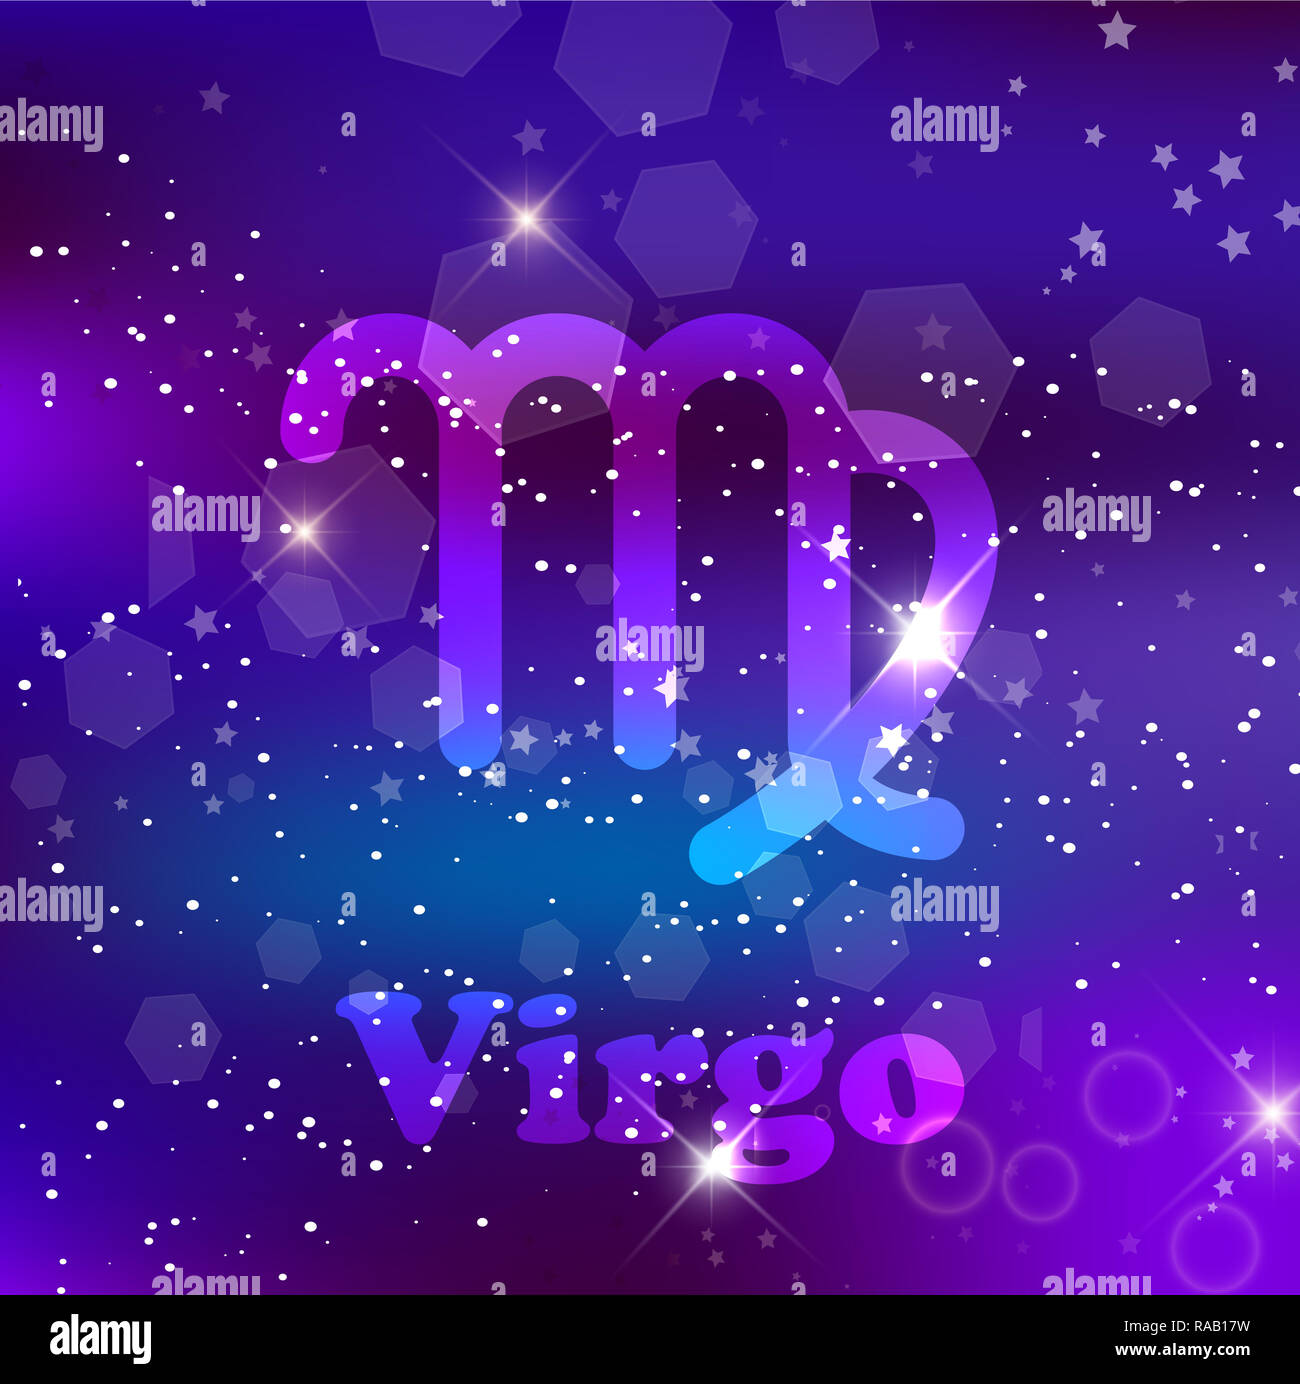 Virgo segno zodiacale e costellazione sul cosmica sfondo viola con stelle luccicanti e nebulosa. illustrazione, banner, poster, card. Spazio, astrolog Foto Stock